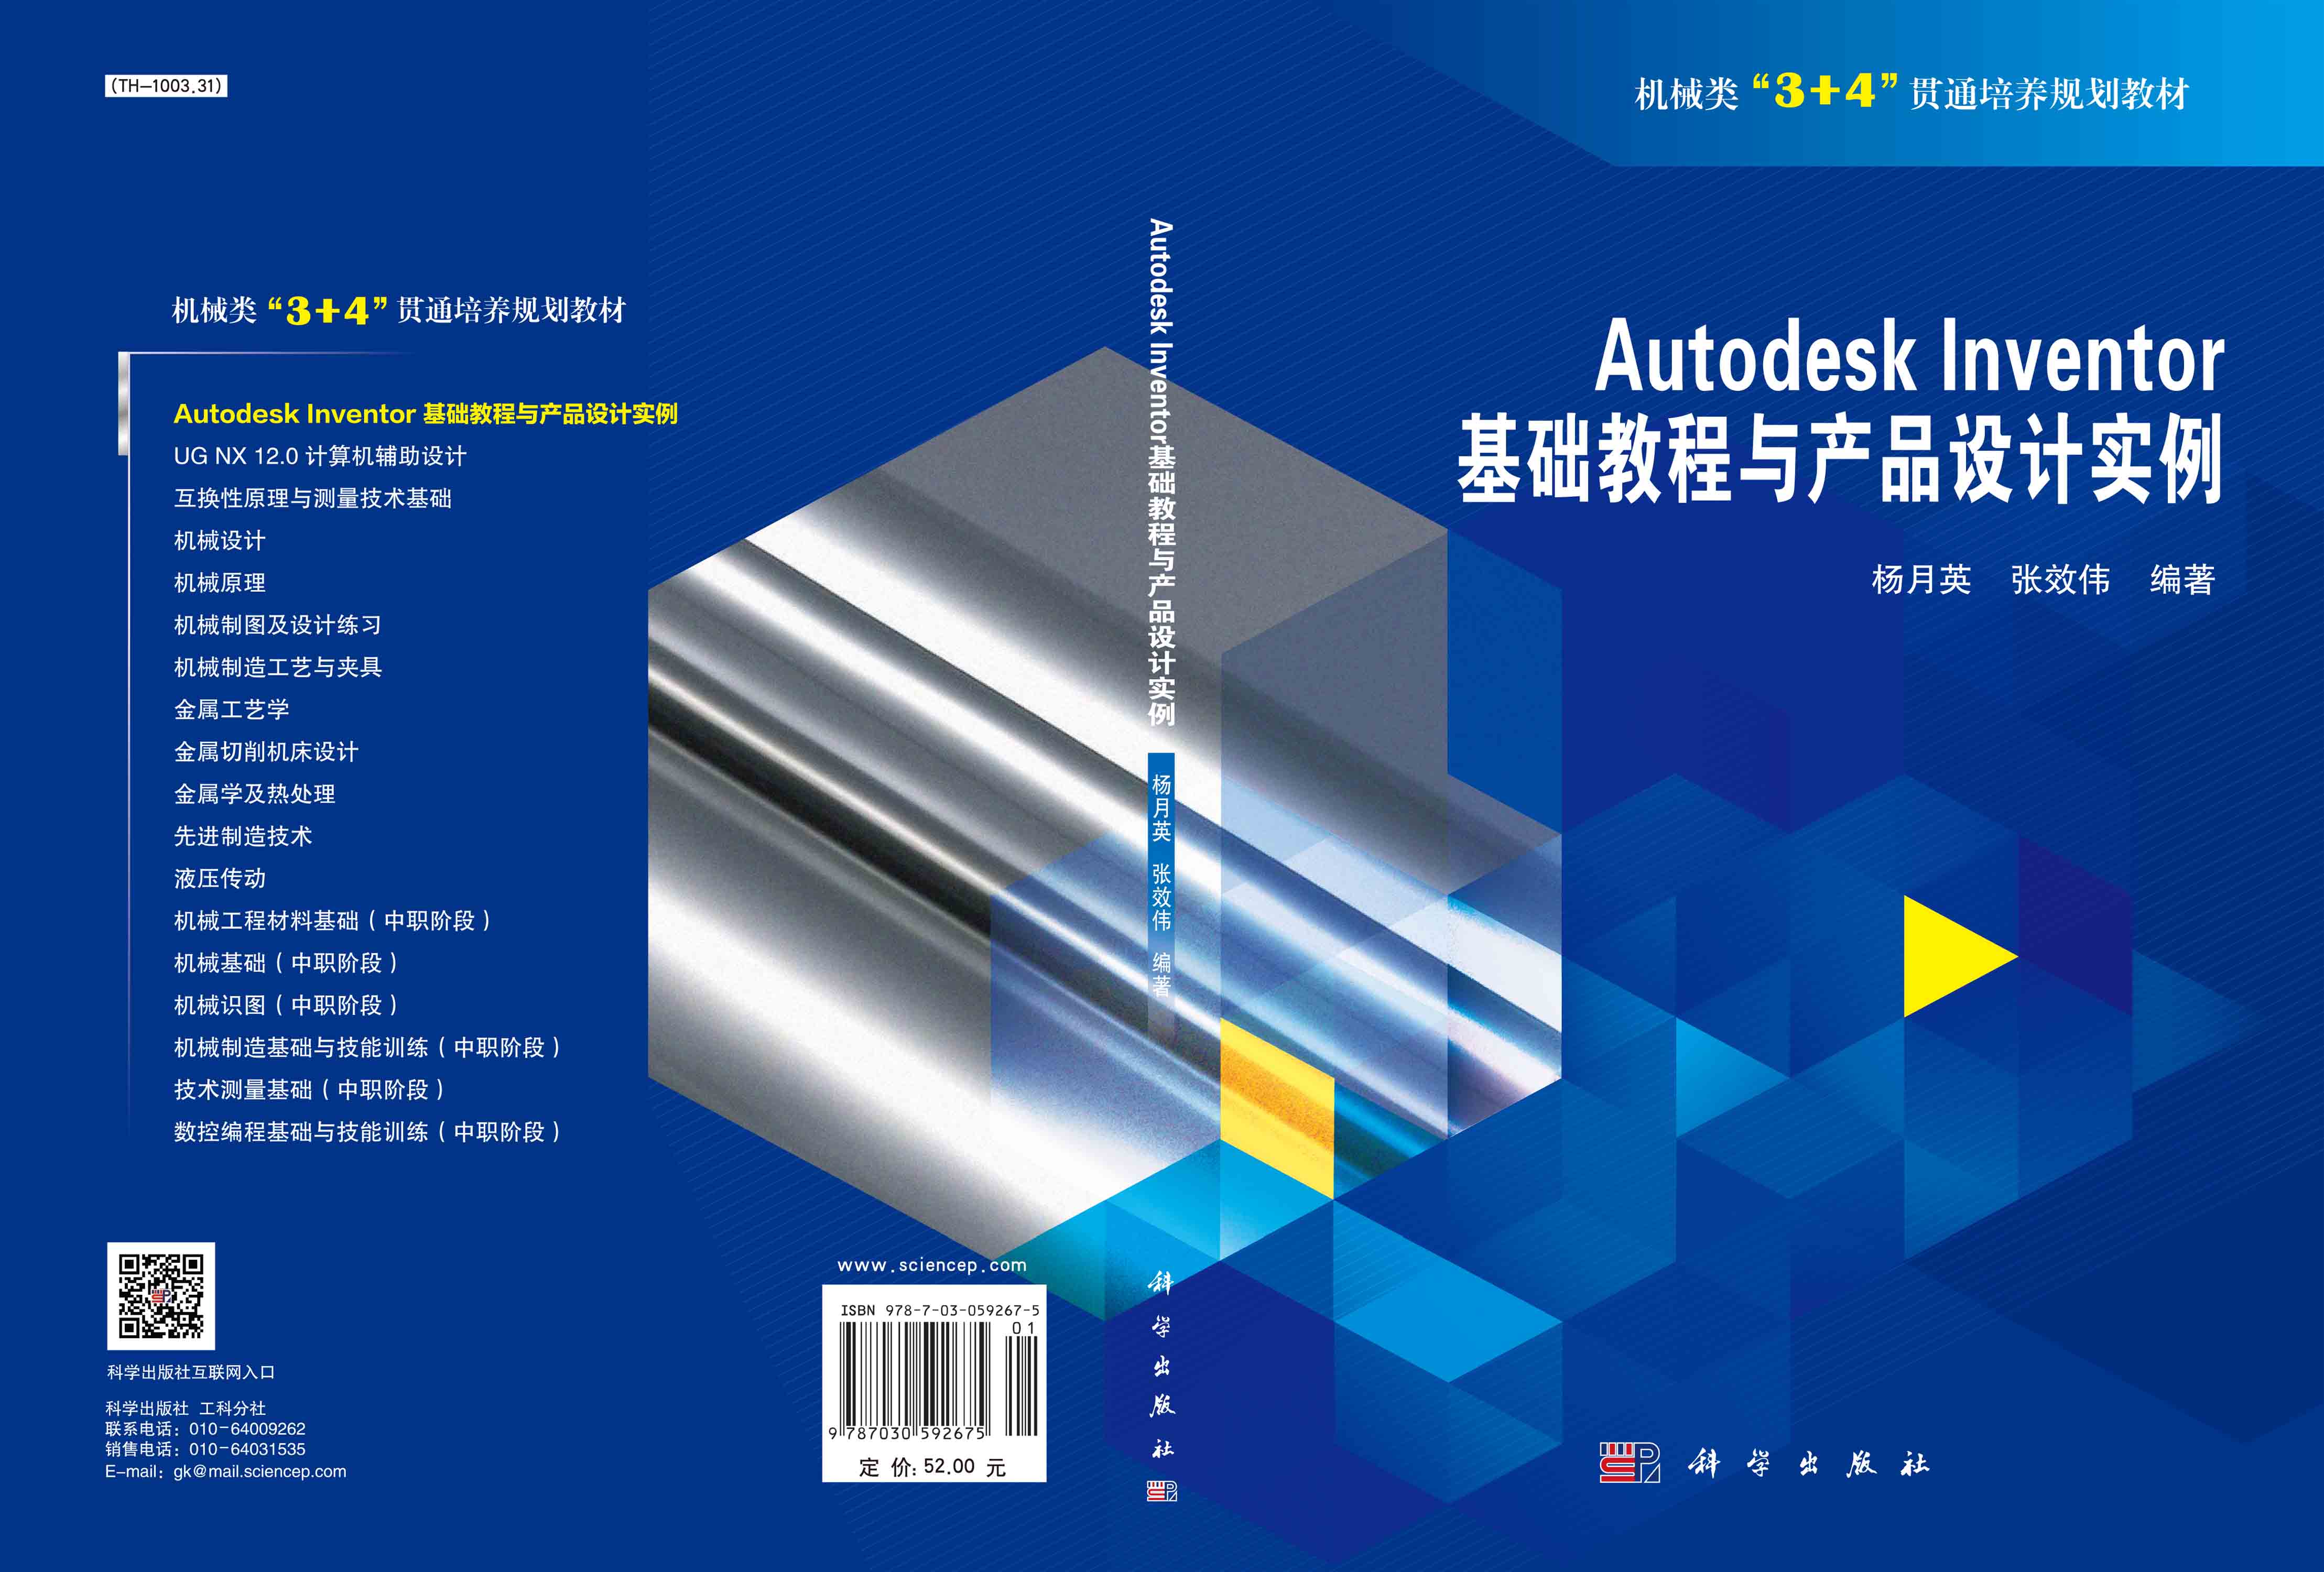 Autodesk Inventor基础教程与产品设计实例